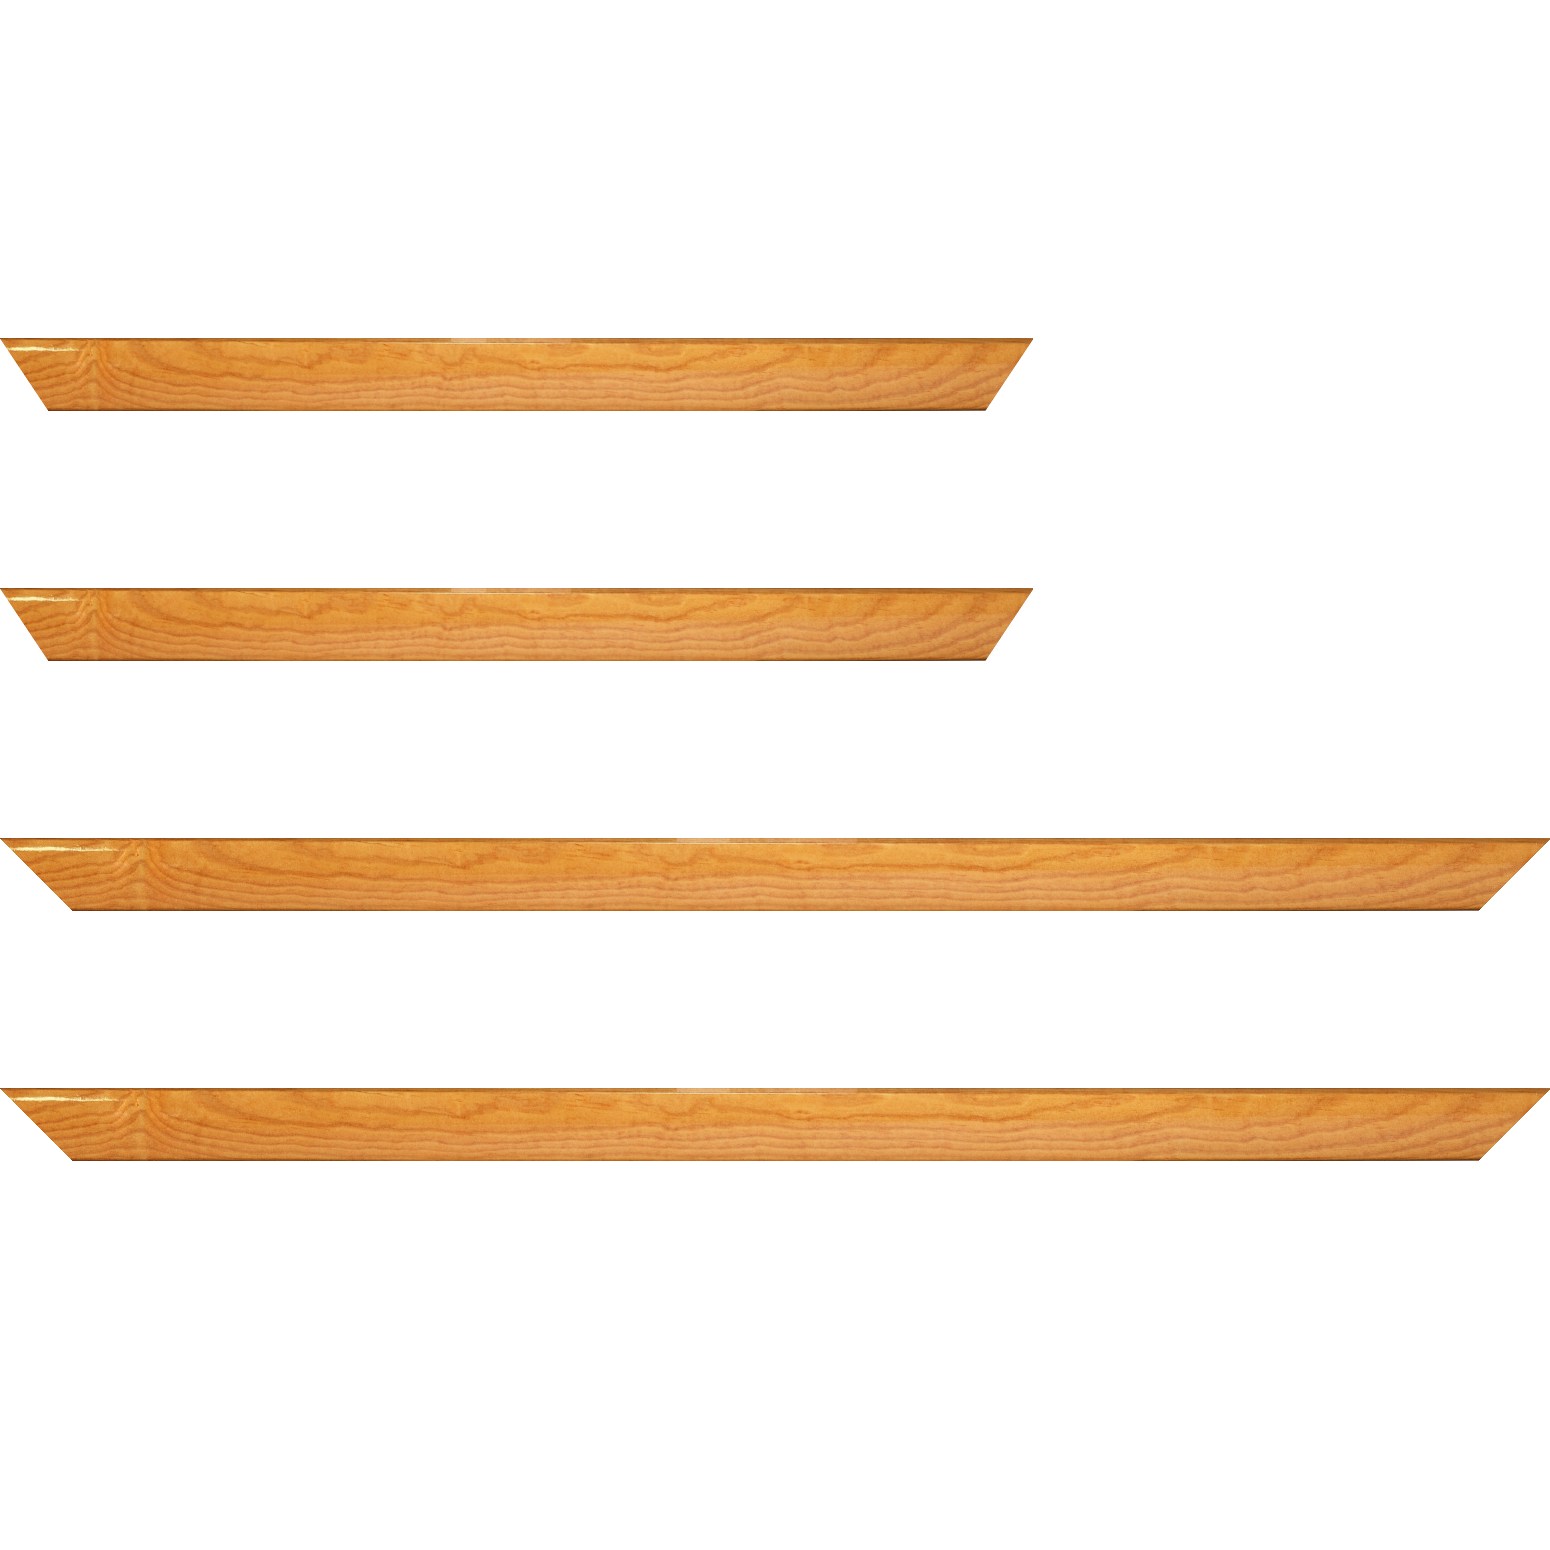 Baguette bois profil arrondi en pente plongeant largeur 2.4cm couleur jaune moutarde finition vernis brillant,veine du bois  apparent (pin) ,